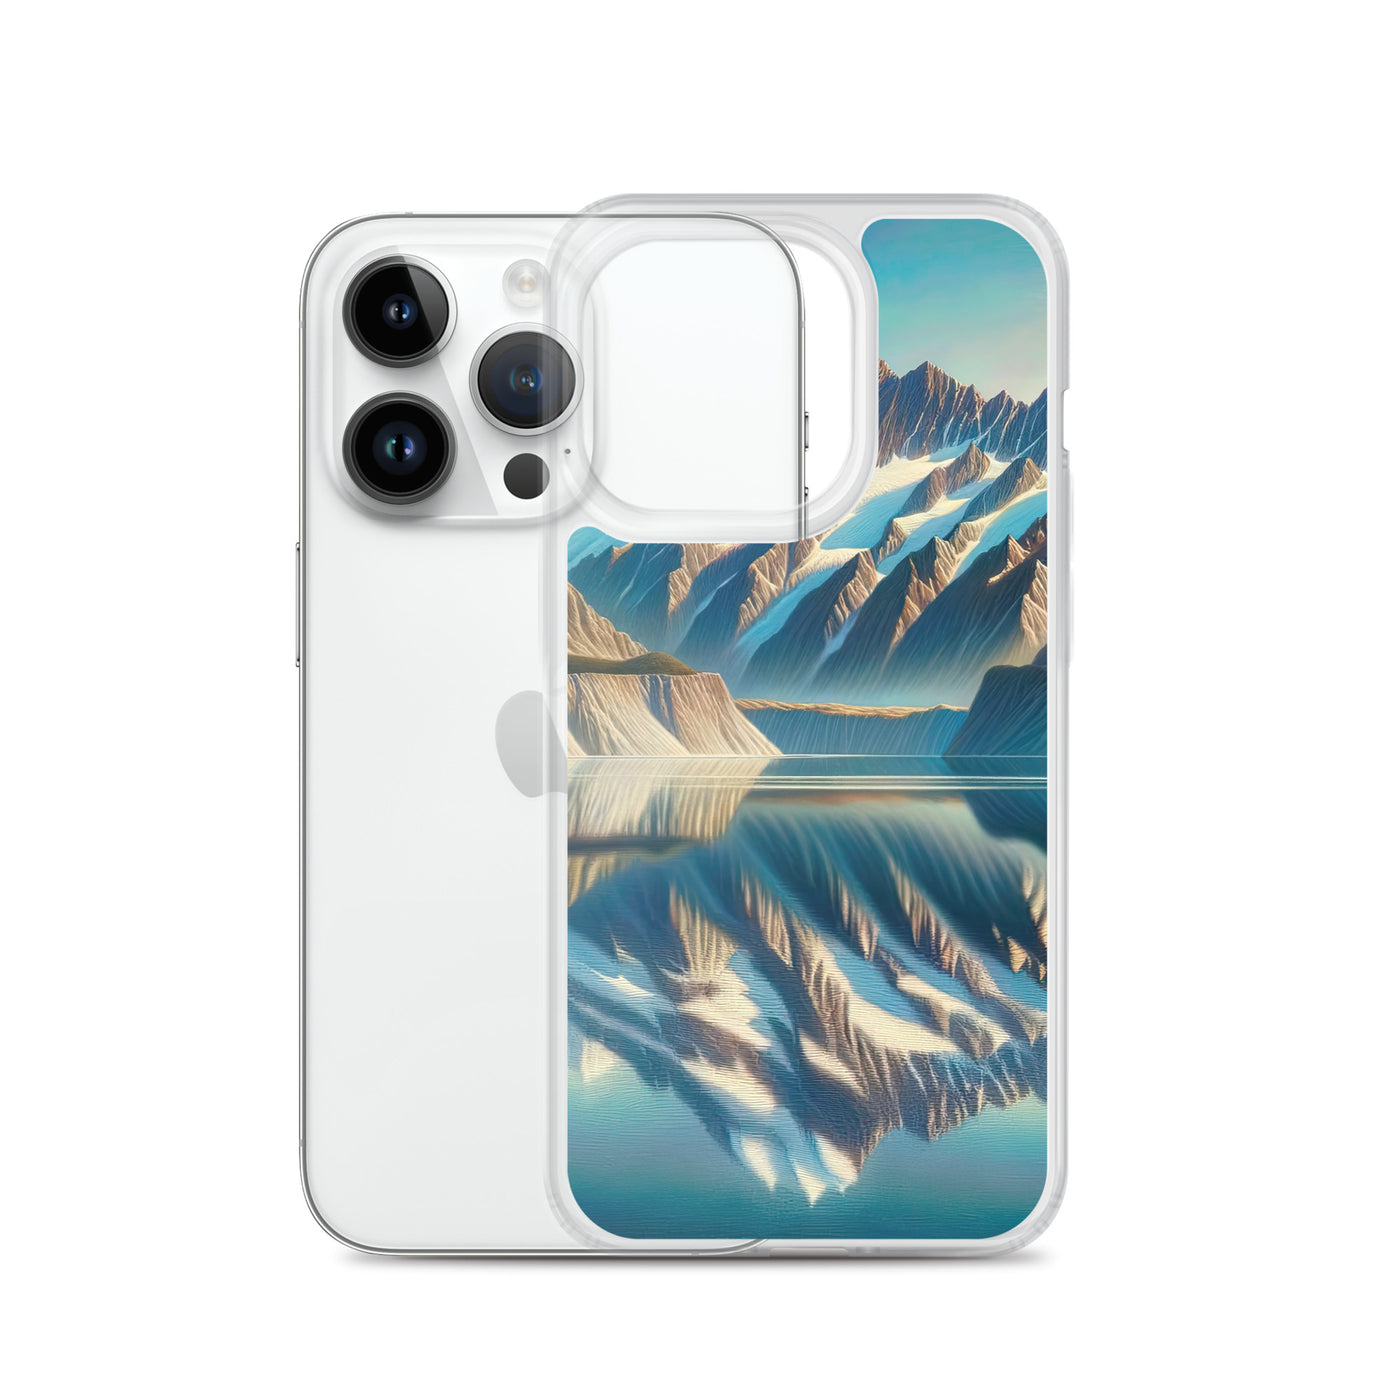 Ölgemälde eines unberührten Sees, der die Bergkette spiegelt - iPhone Schutzhülle (durchsichtig) berge xxx yyy zzz